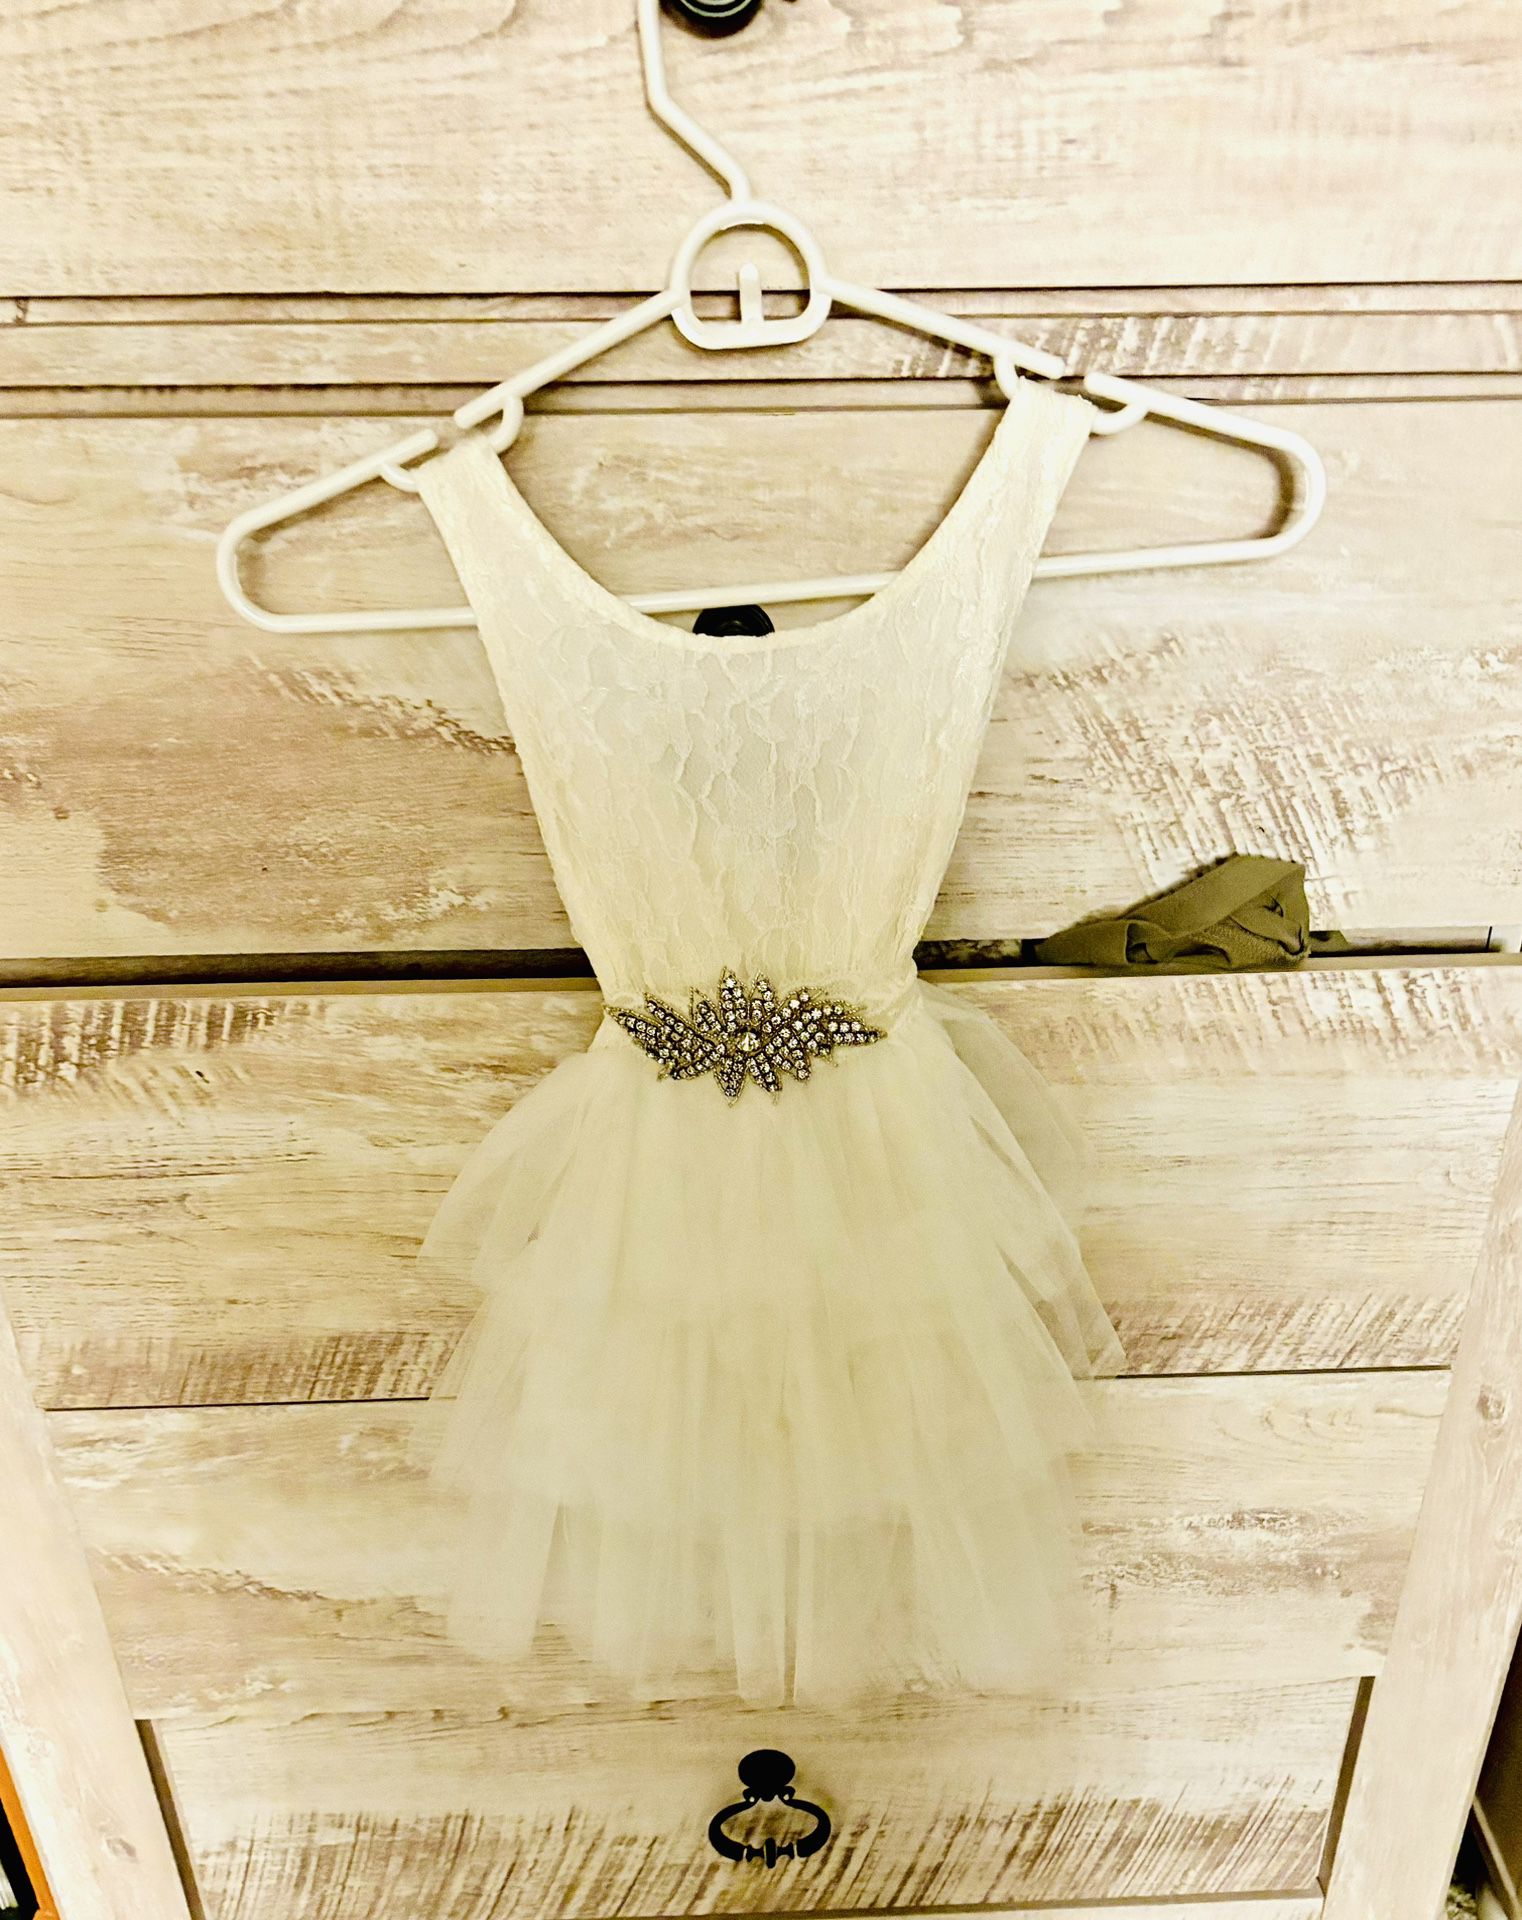 Girls Wedding Dress/Flower girl Dress/Event Dress